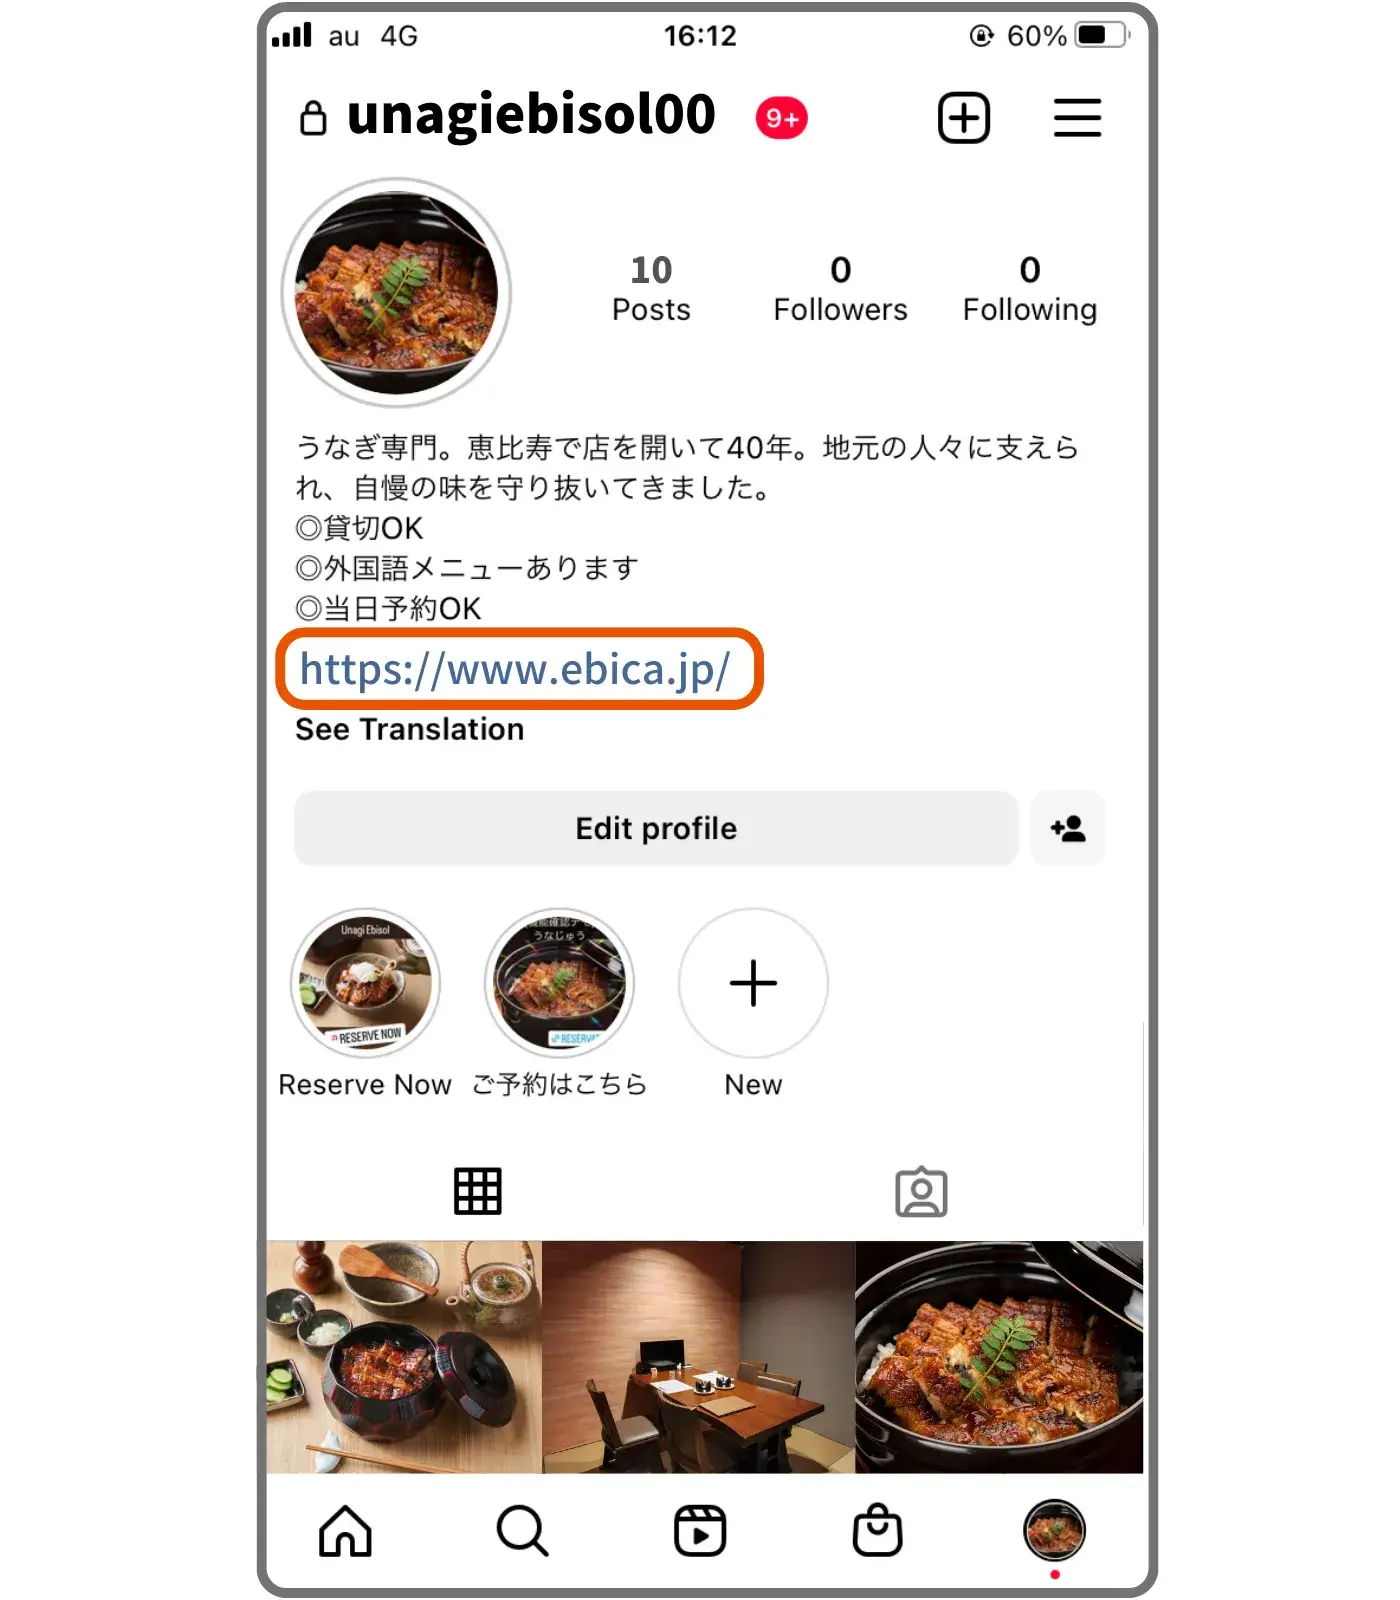 Instagramのビジネスの説明欄を活用した飲食店のインバウンド予約集客